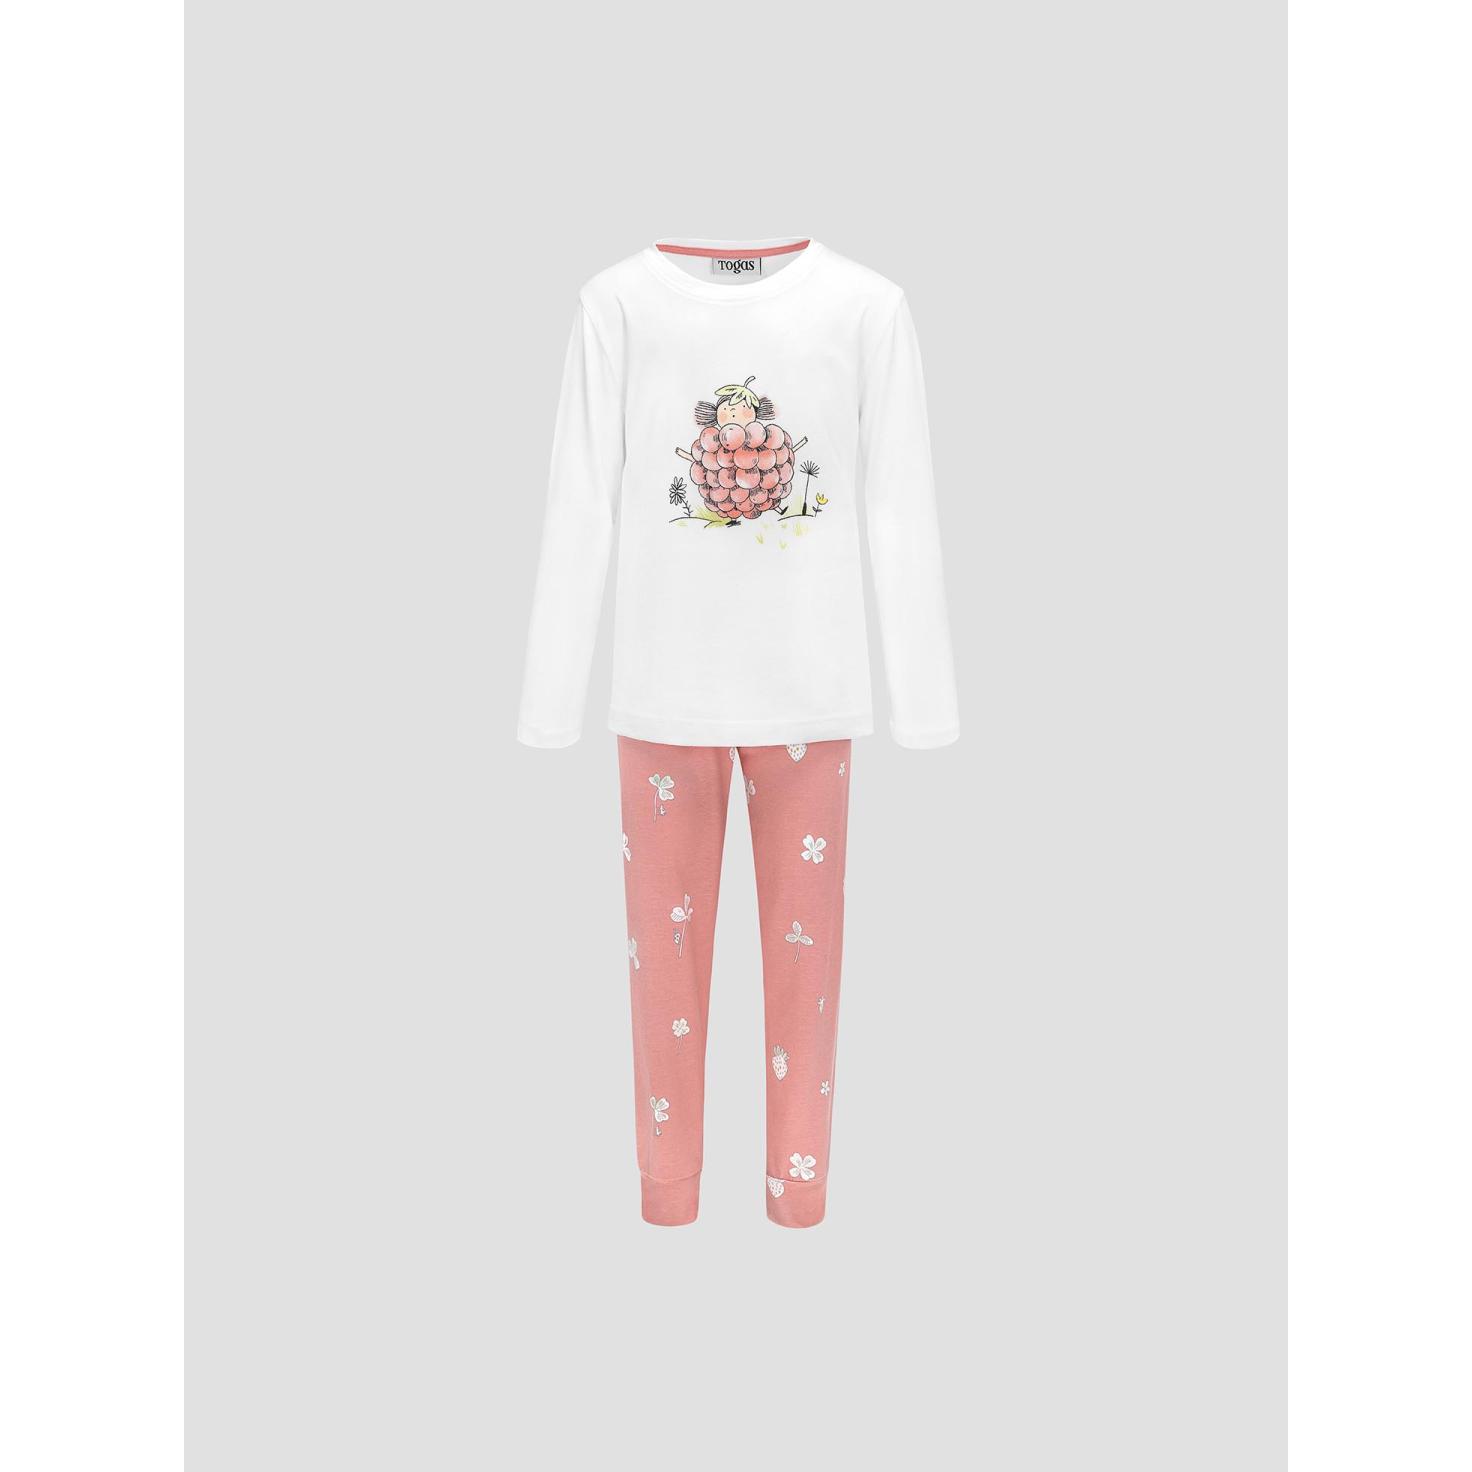 Пижама для девочек Kids by togas Стробби бело-розовый 92-98 см жен пижама с шортами инь янь белый р 52